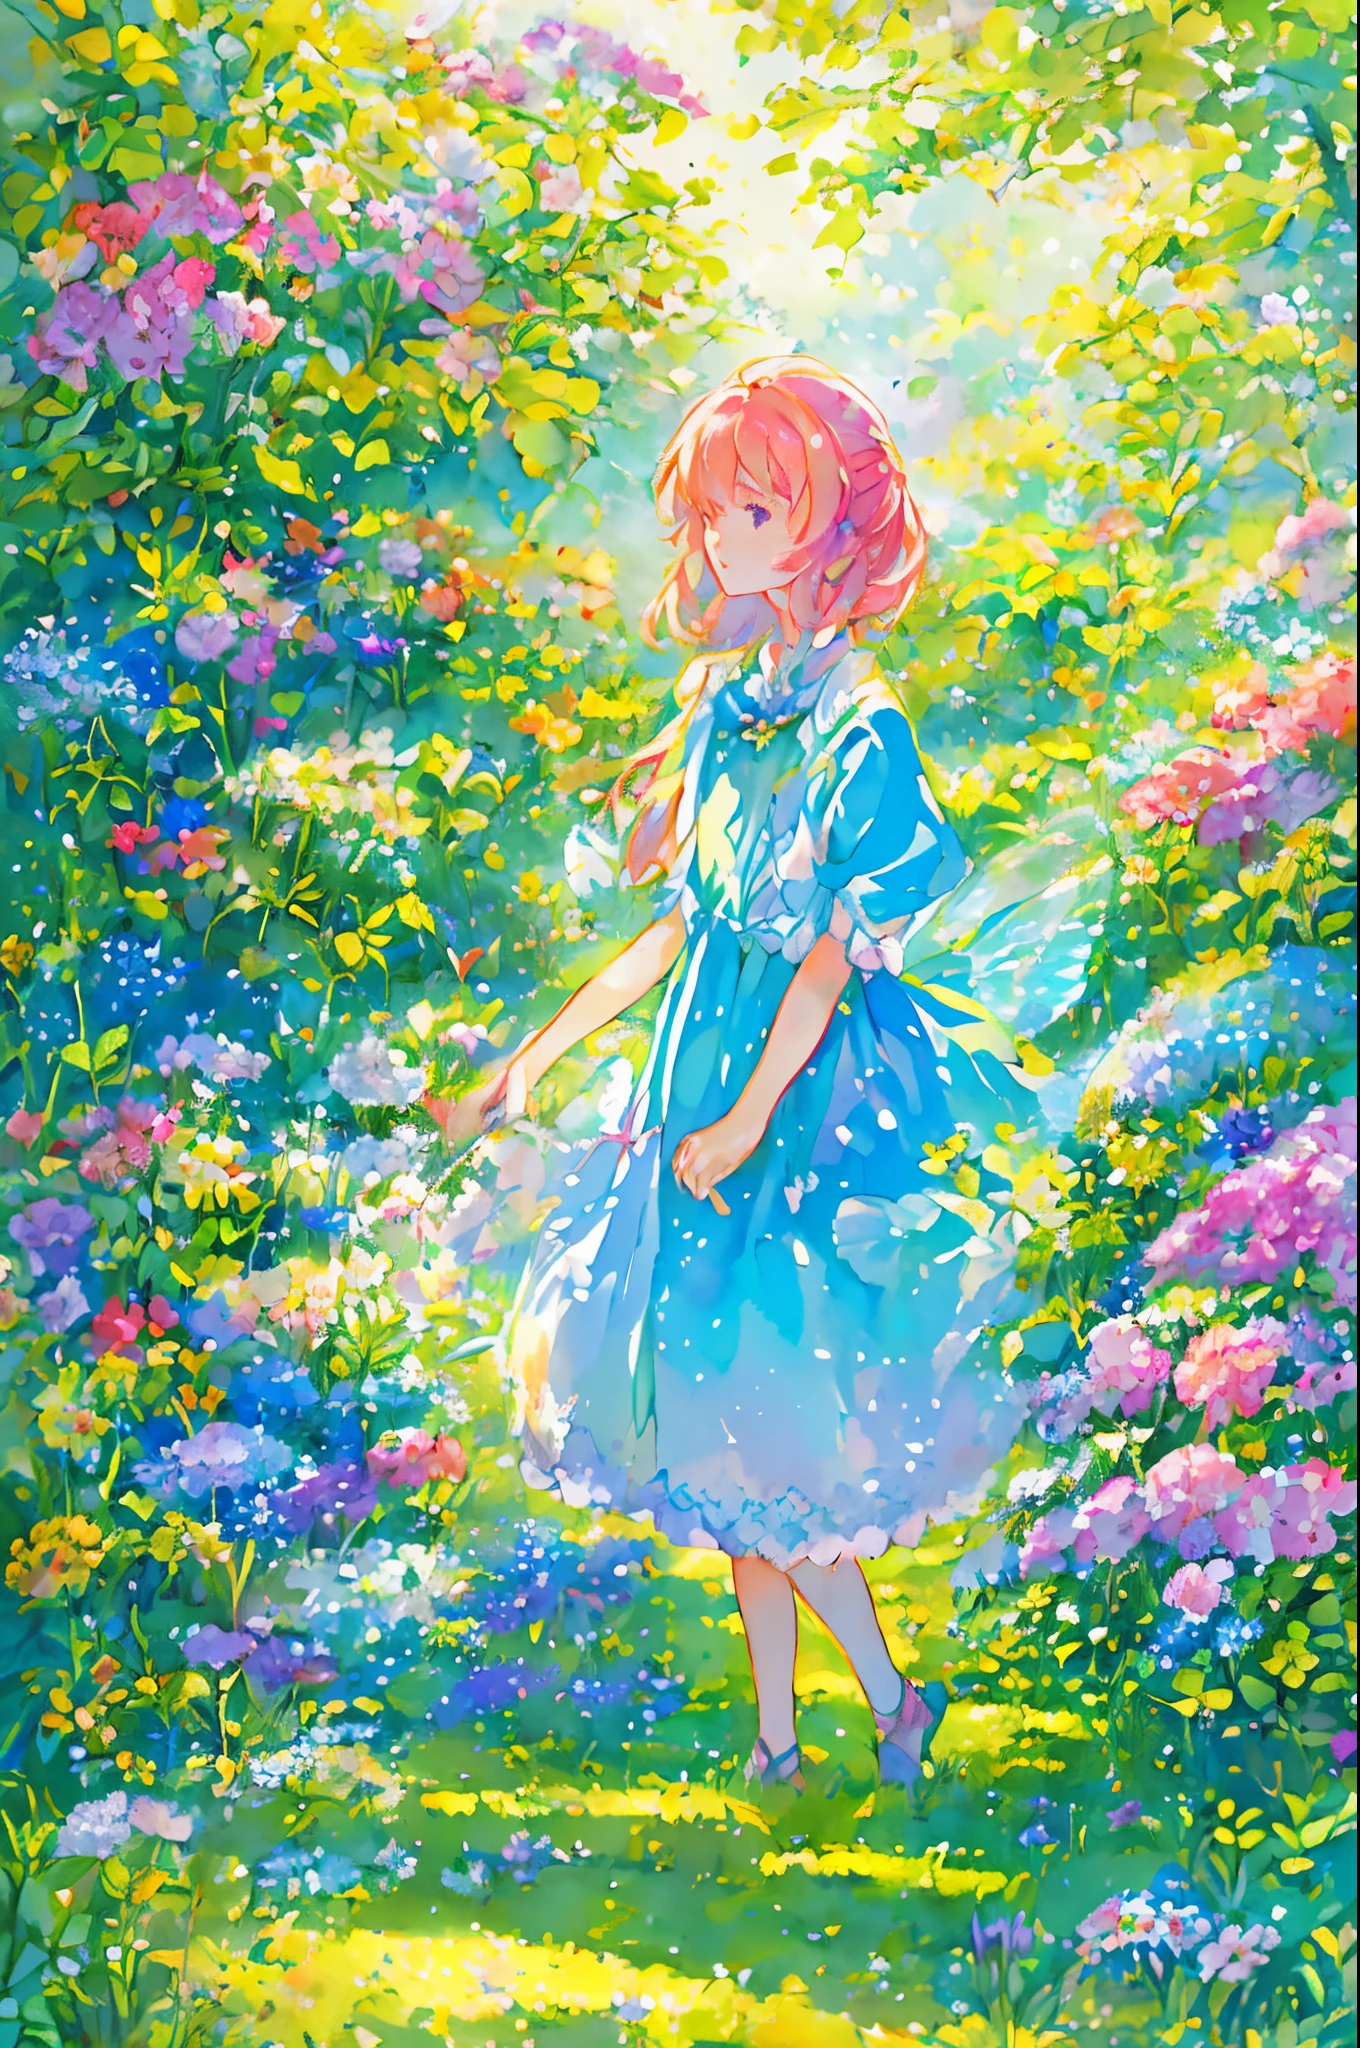 仙女服装的美丽女孩, 被花和蝴蝶包圍. 内容: 水彩畫. 風格: 反复无常又细腻, 就像儿童书籍里的插图.